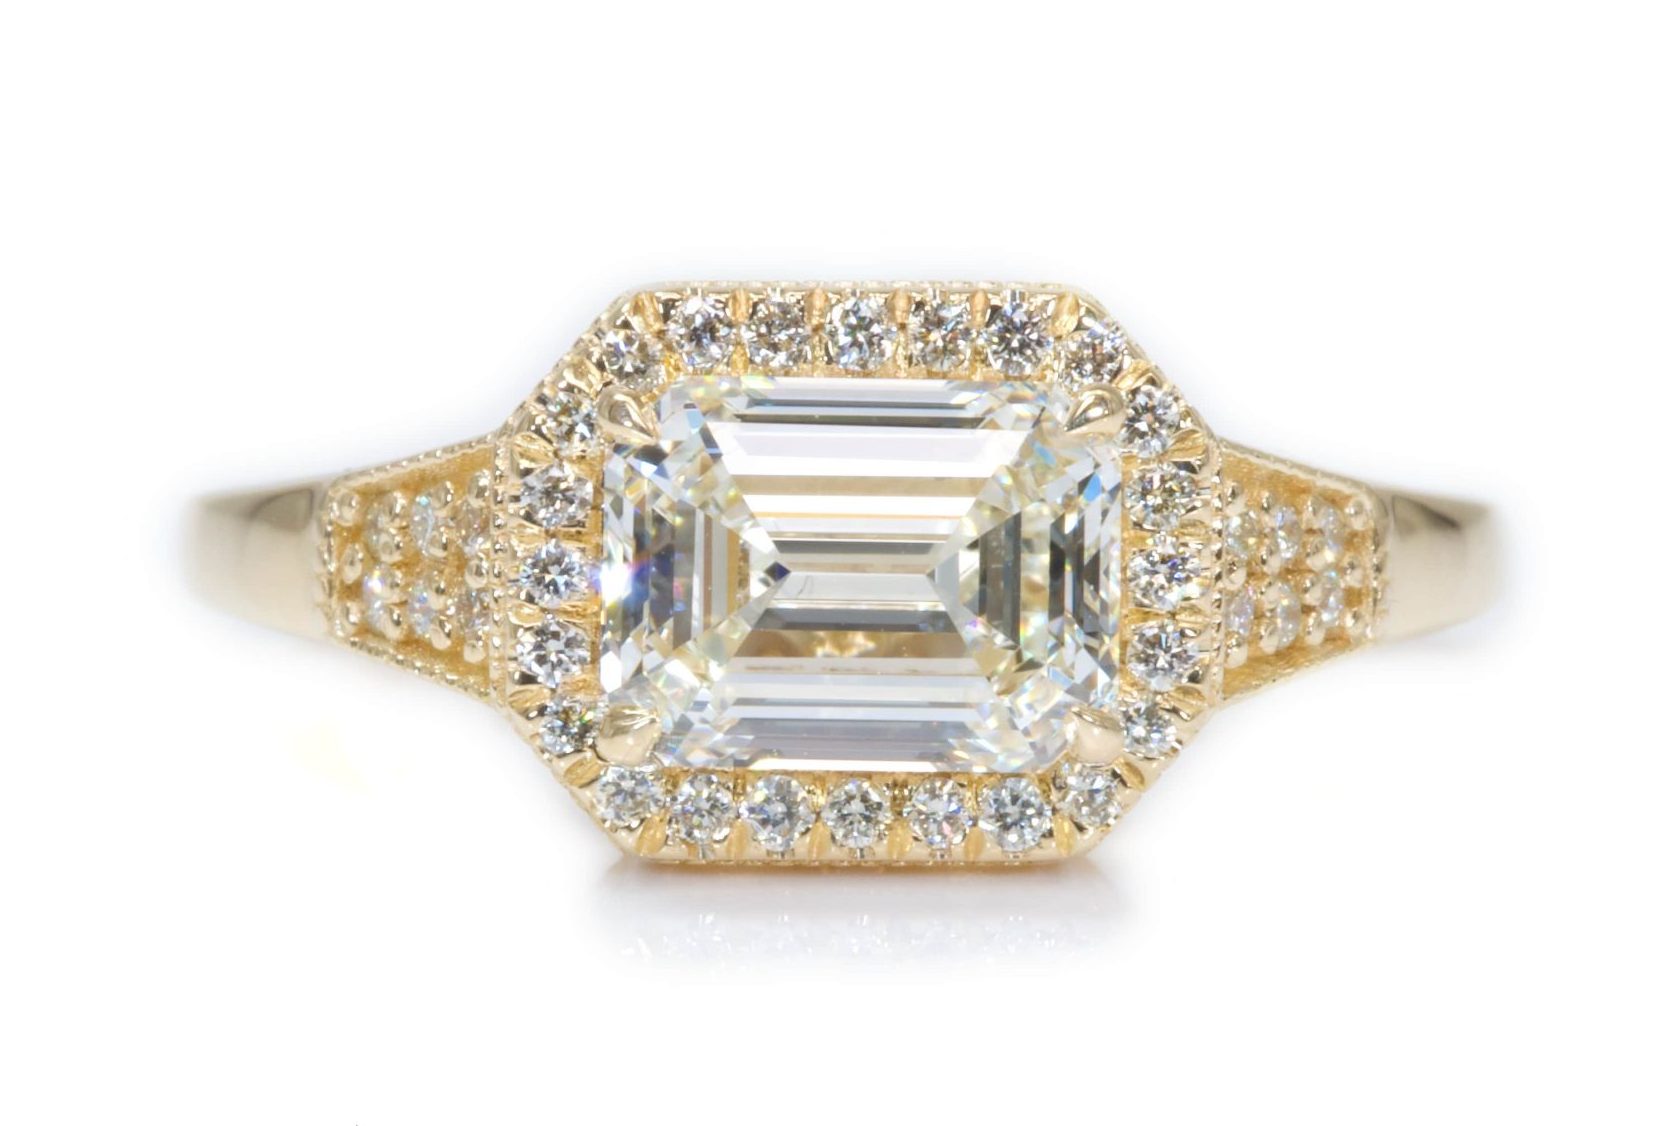 טבעת מזהב בצורת אמרלד בעיצוב מיוחד ניתנת לייצור בזהב לבן צהוב או אדום.